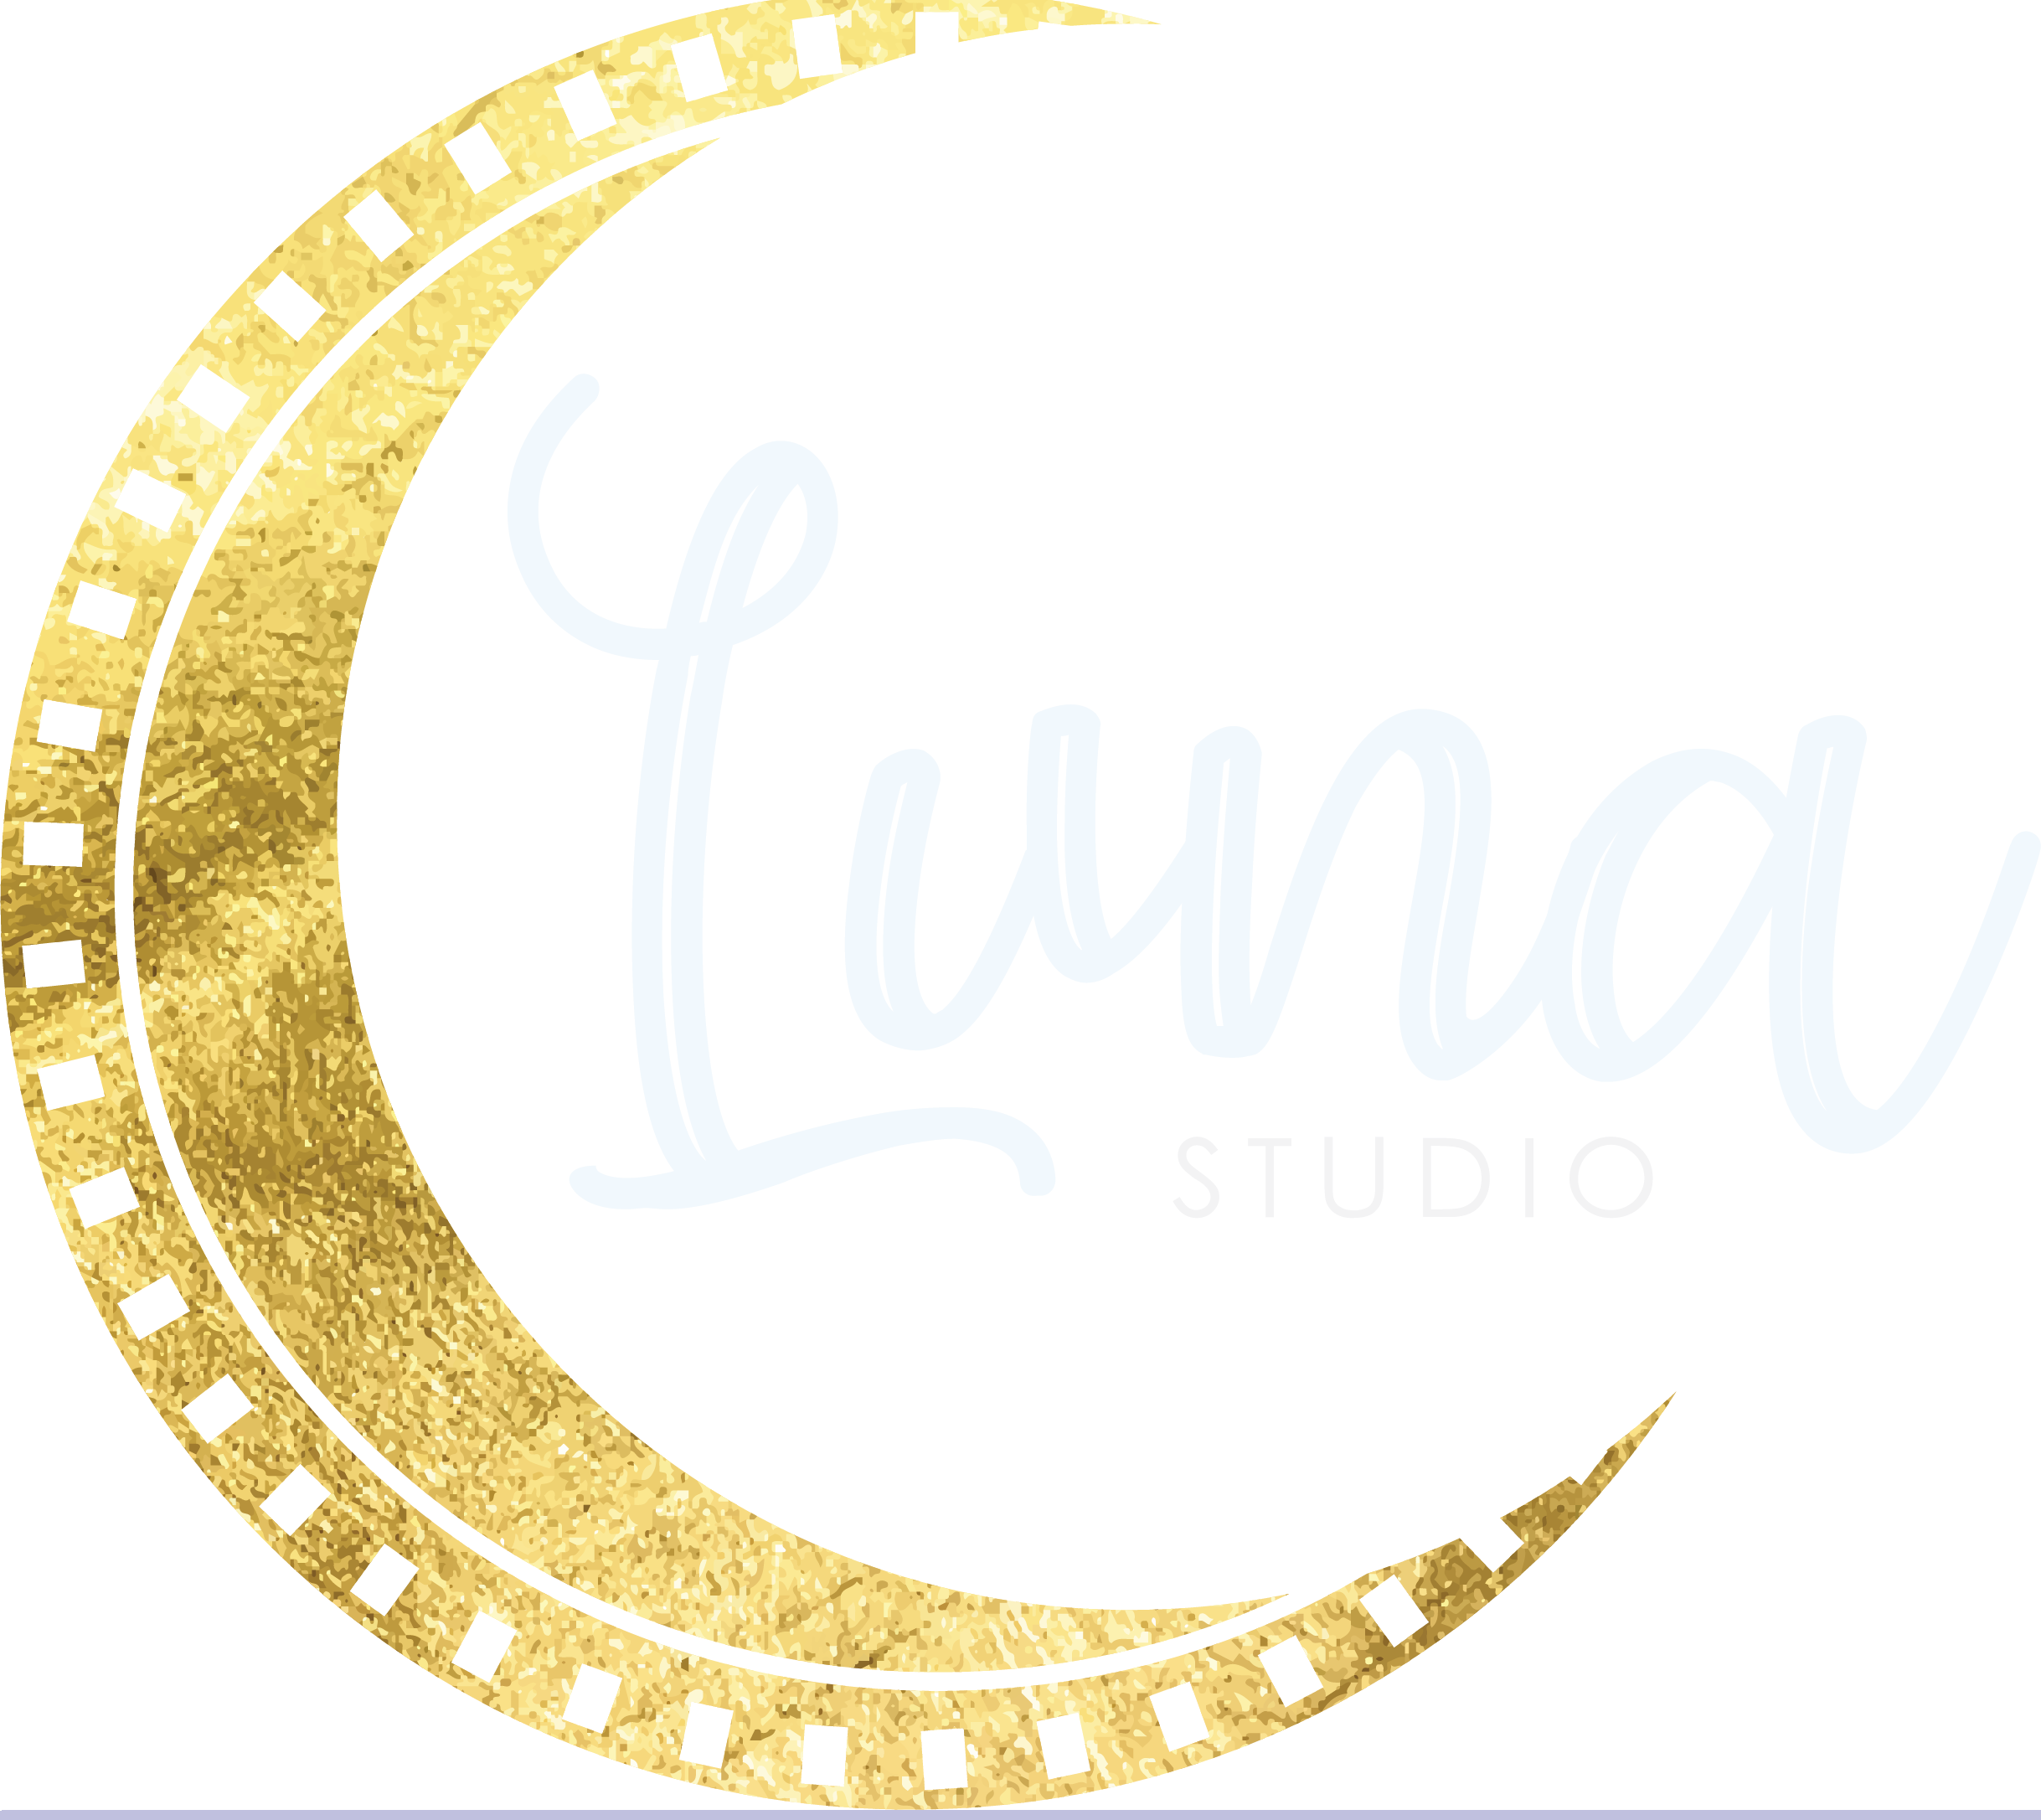 Luna Studio